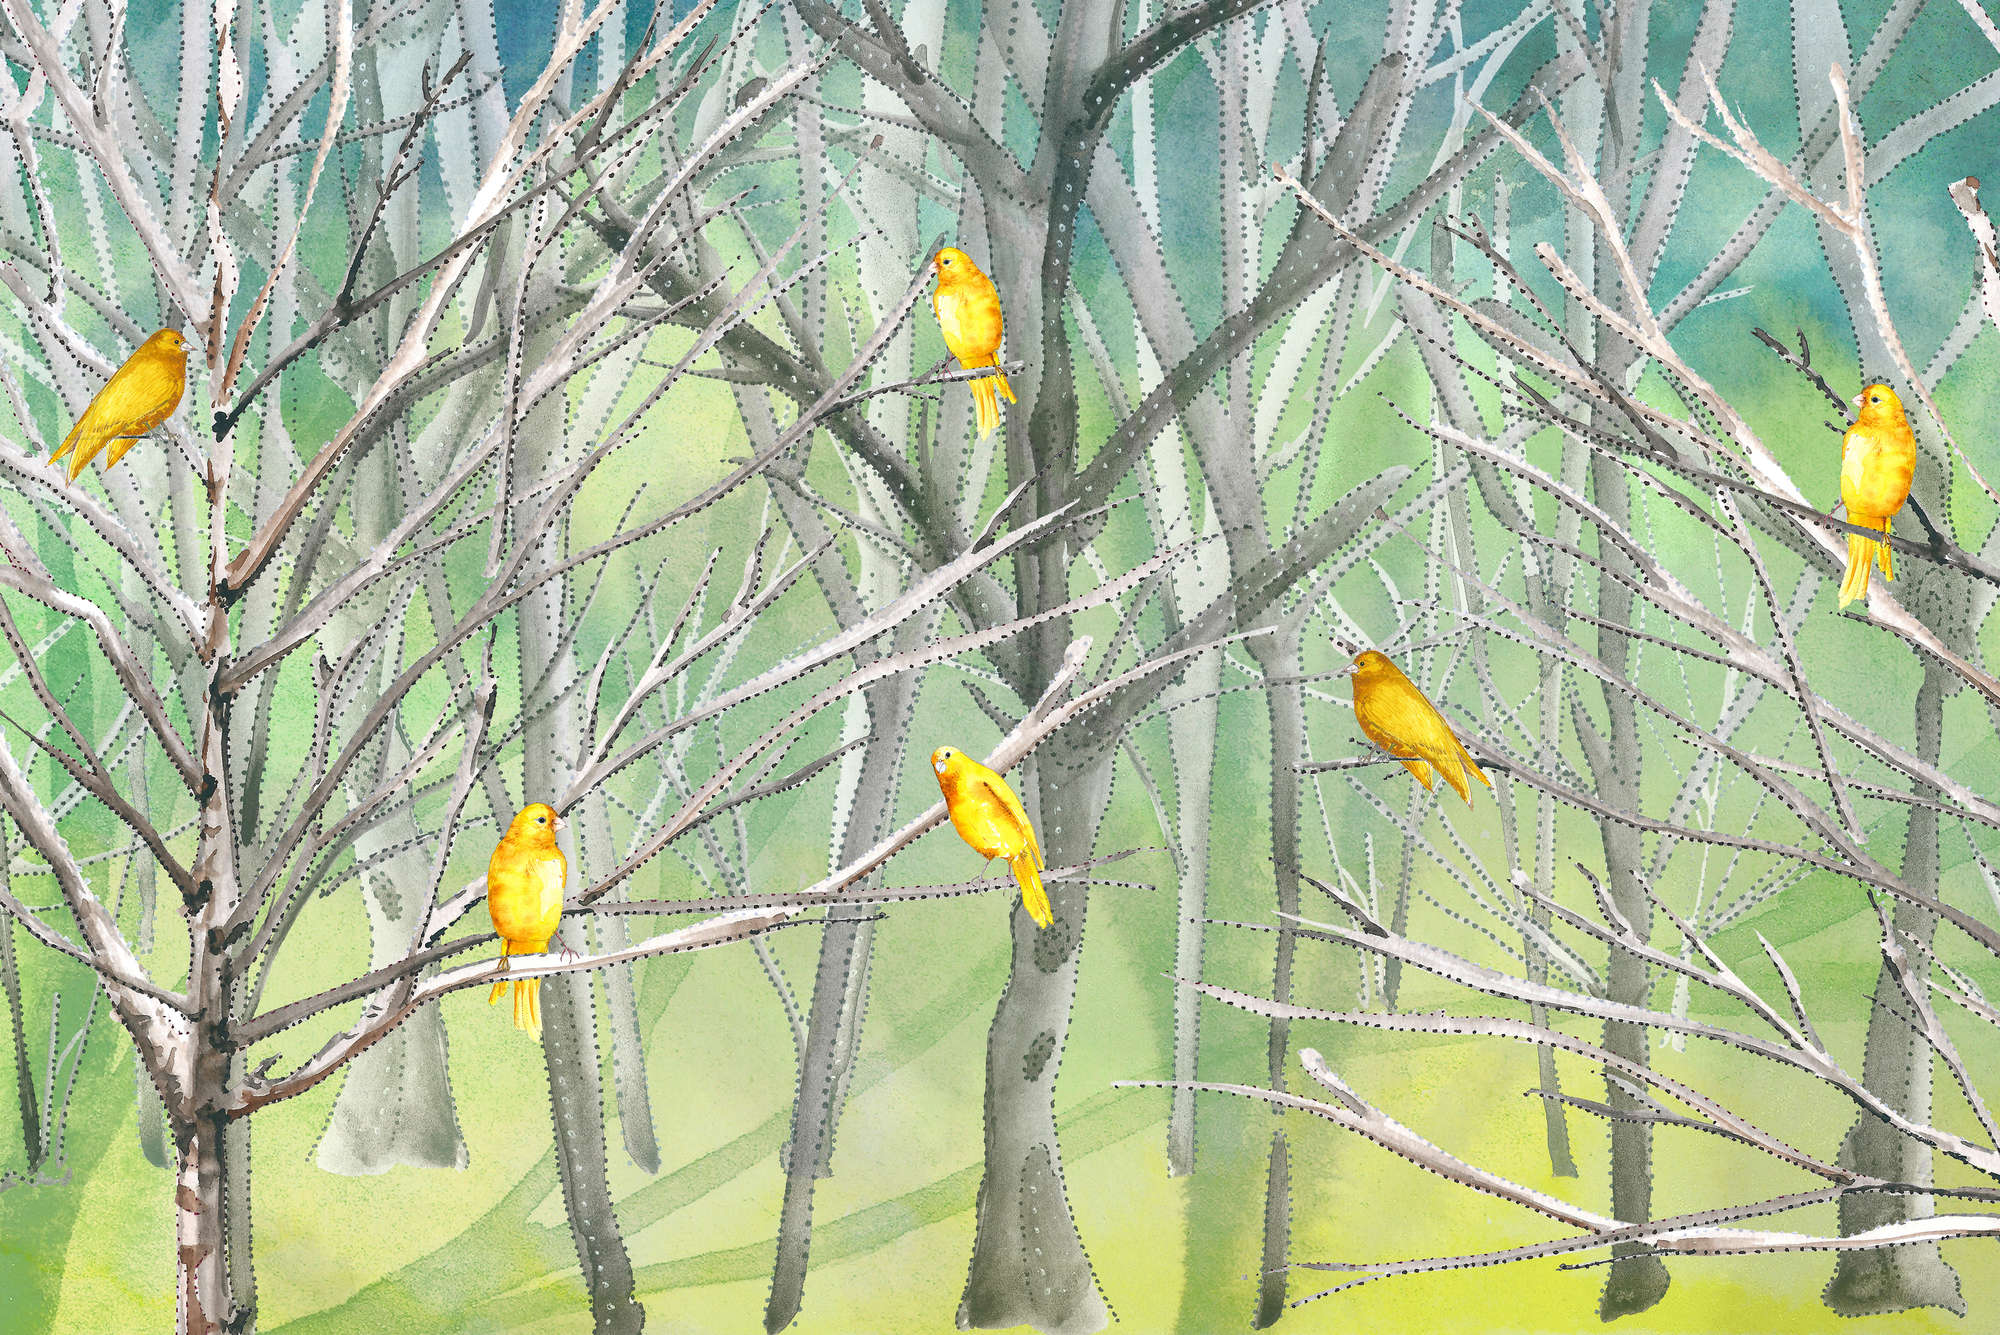             Papel pintado de bosque con pájaros en azul y amarillo sobre vellón liso mate
        